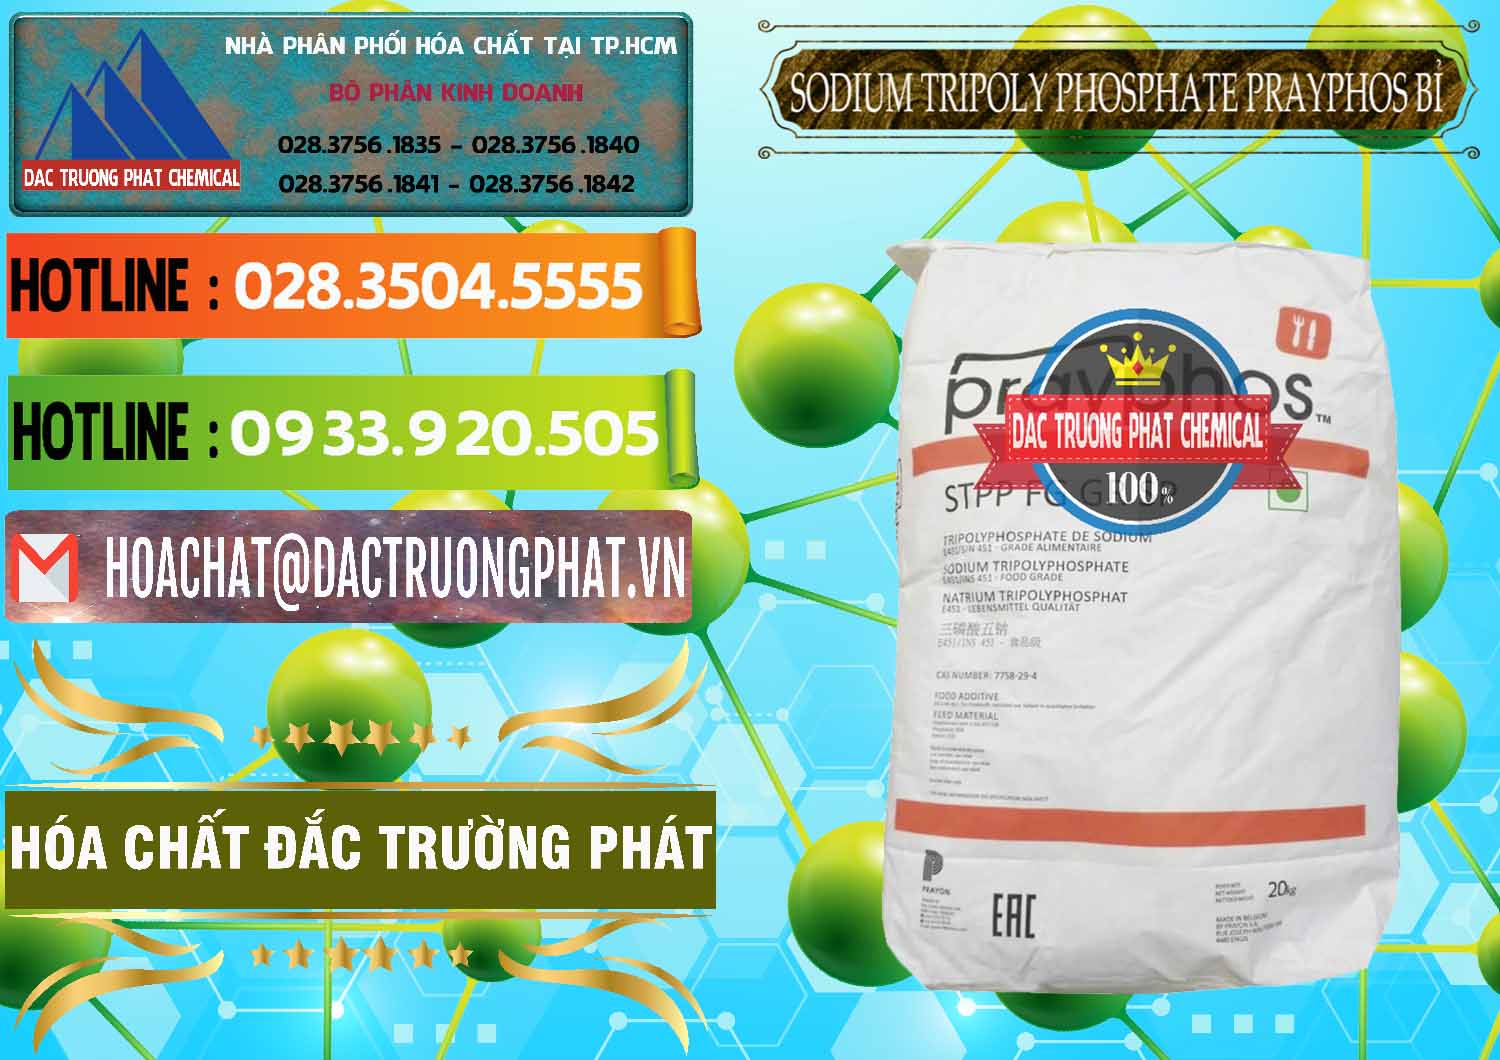 Công ty cung ứng ( bán ) Sodium Tripoly Phosphate - STPP Prayphos Bỉ Belgium - 0444 - Nơi chuyên kinh doanh và phân phối hóa chất tại TP.HCM - cungcaphoachat.com.vn